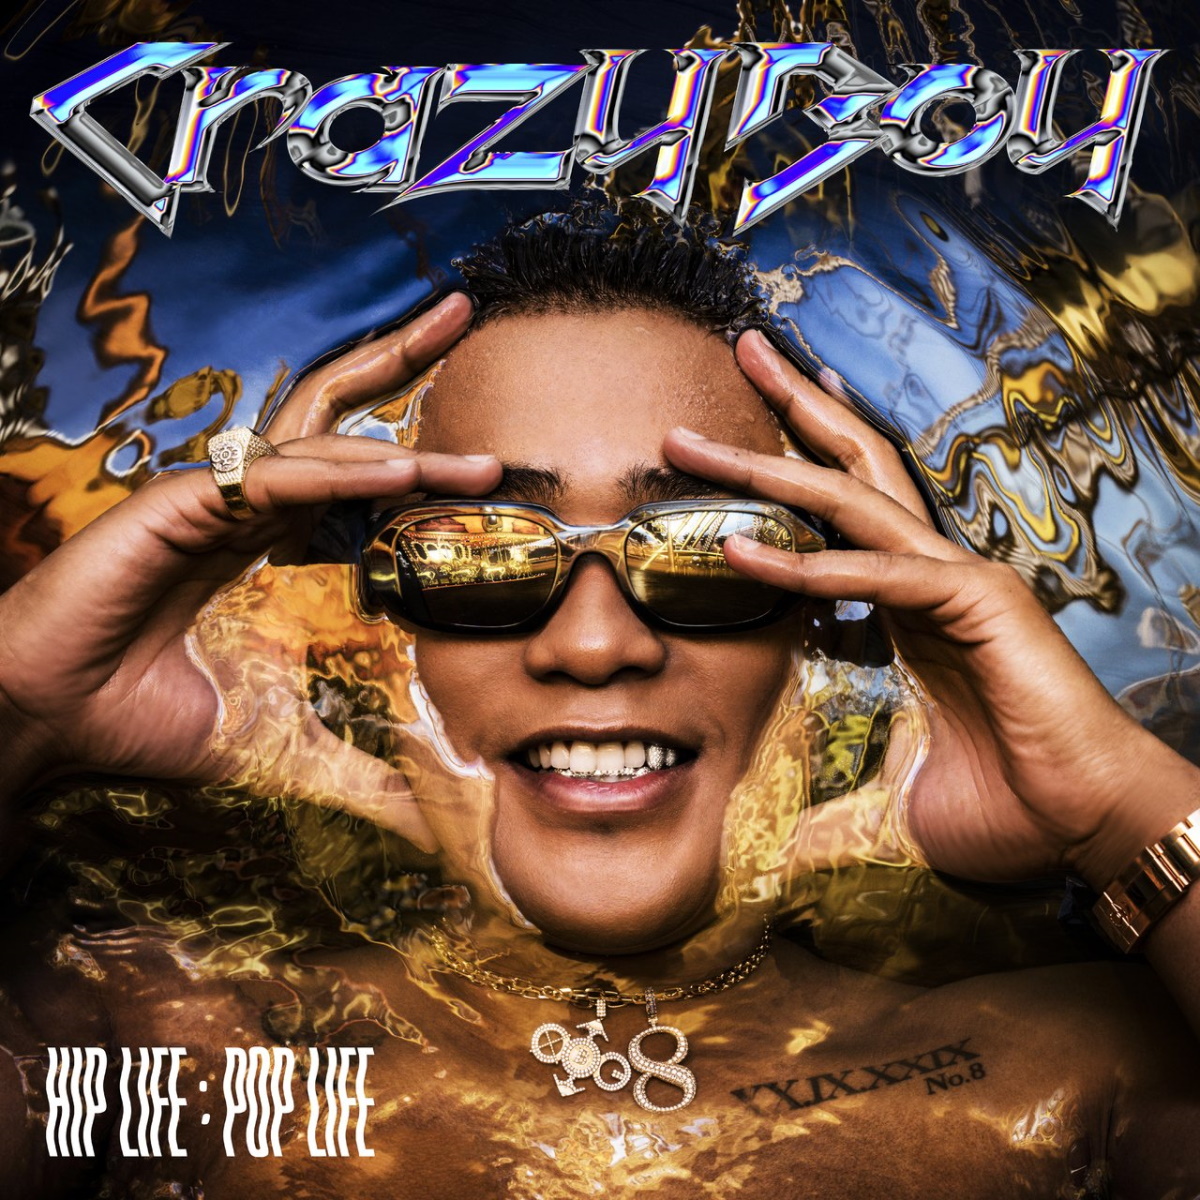 『CrazyBoy - it’s you』収録の『HIP LIFE：POP LIFE』ジャケット